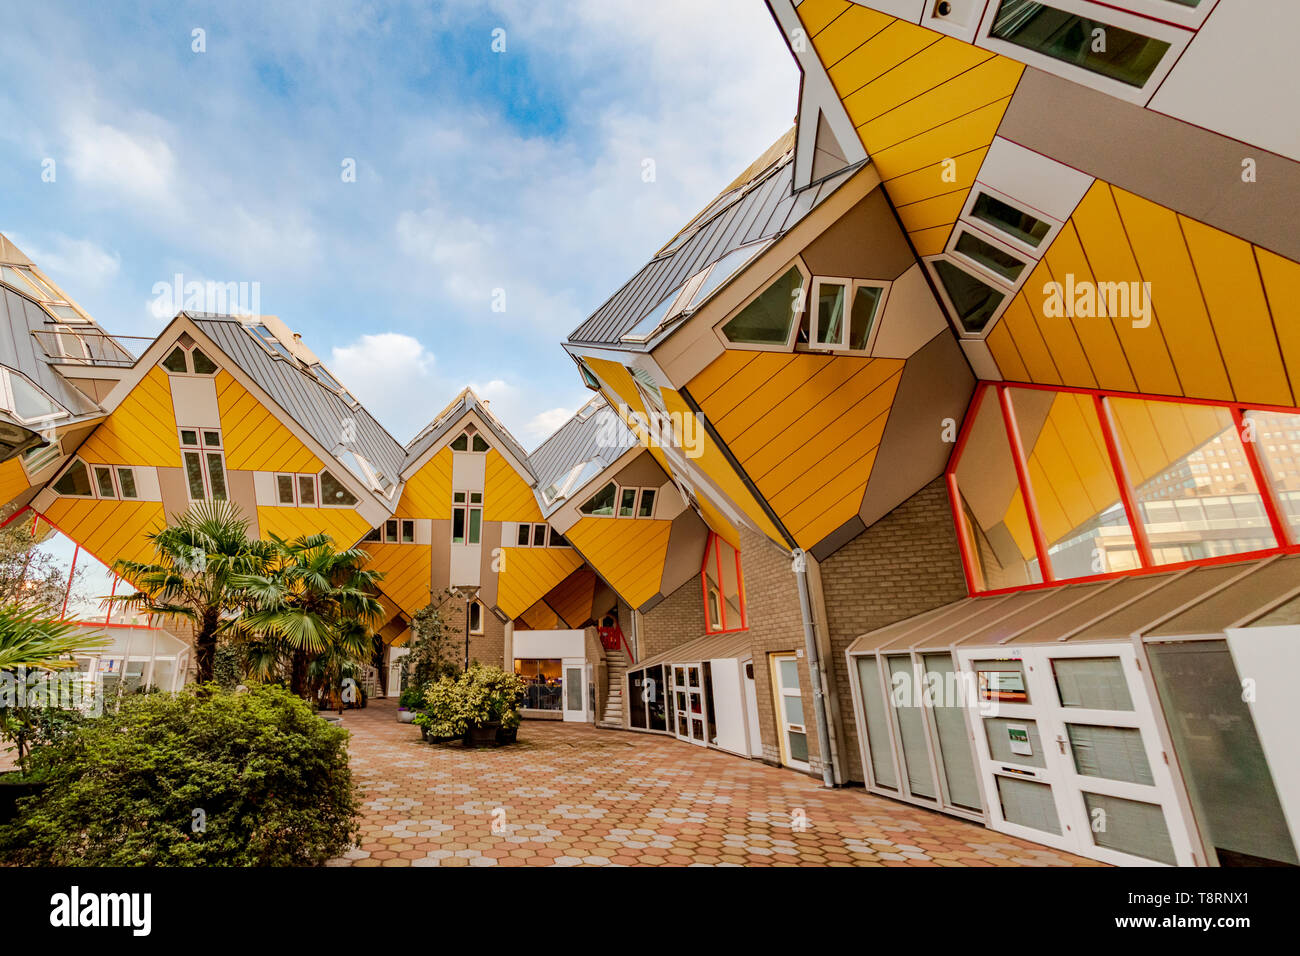 Maisons Cube - Holland Casino à Rotterdam Pays Bas - l'architecte Piet Blom - maisons jaune - architecture moderne - maisons modernes - maison moderne Banque D'Images